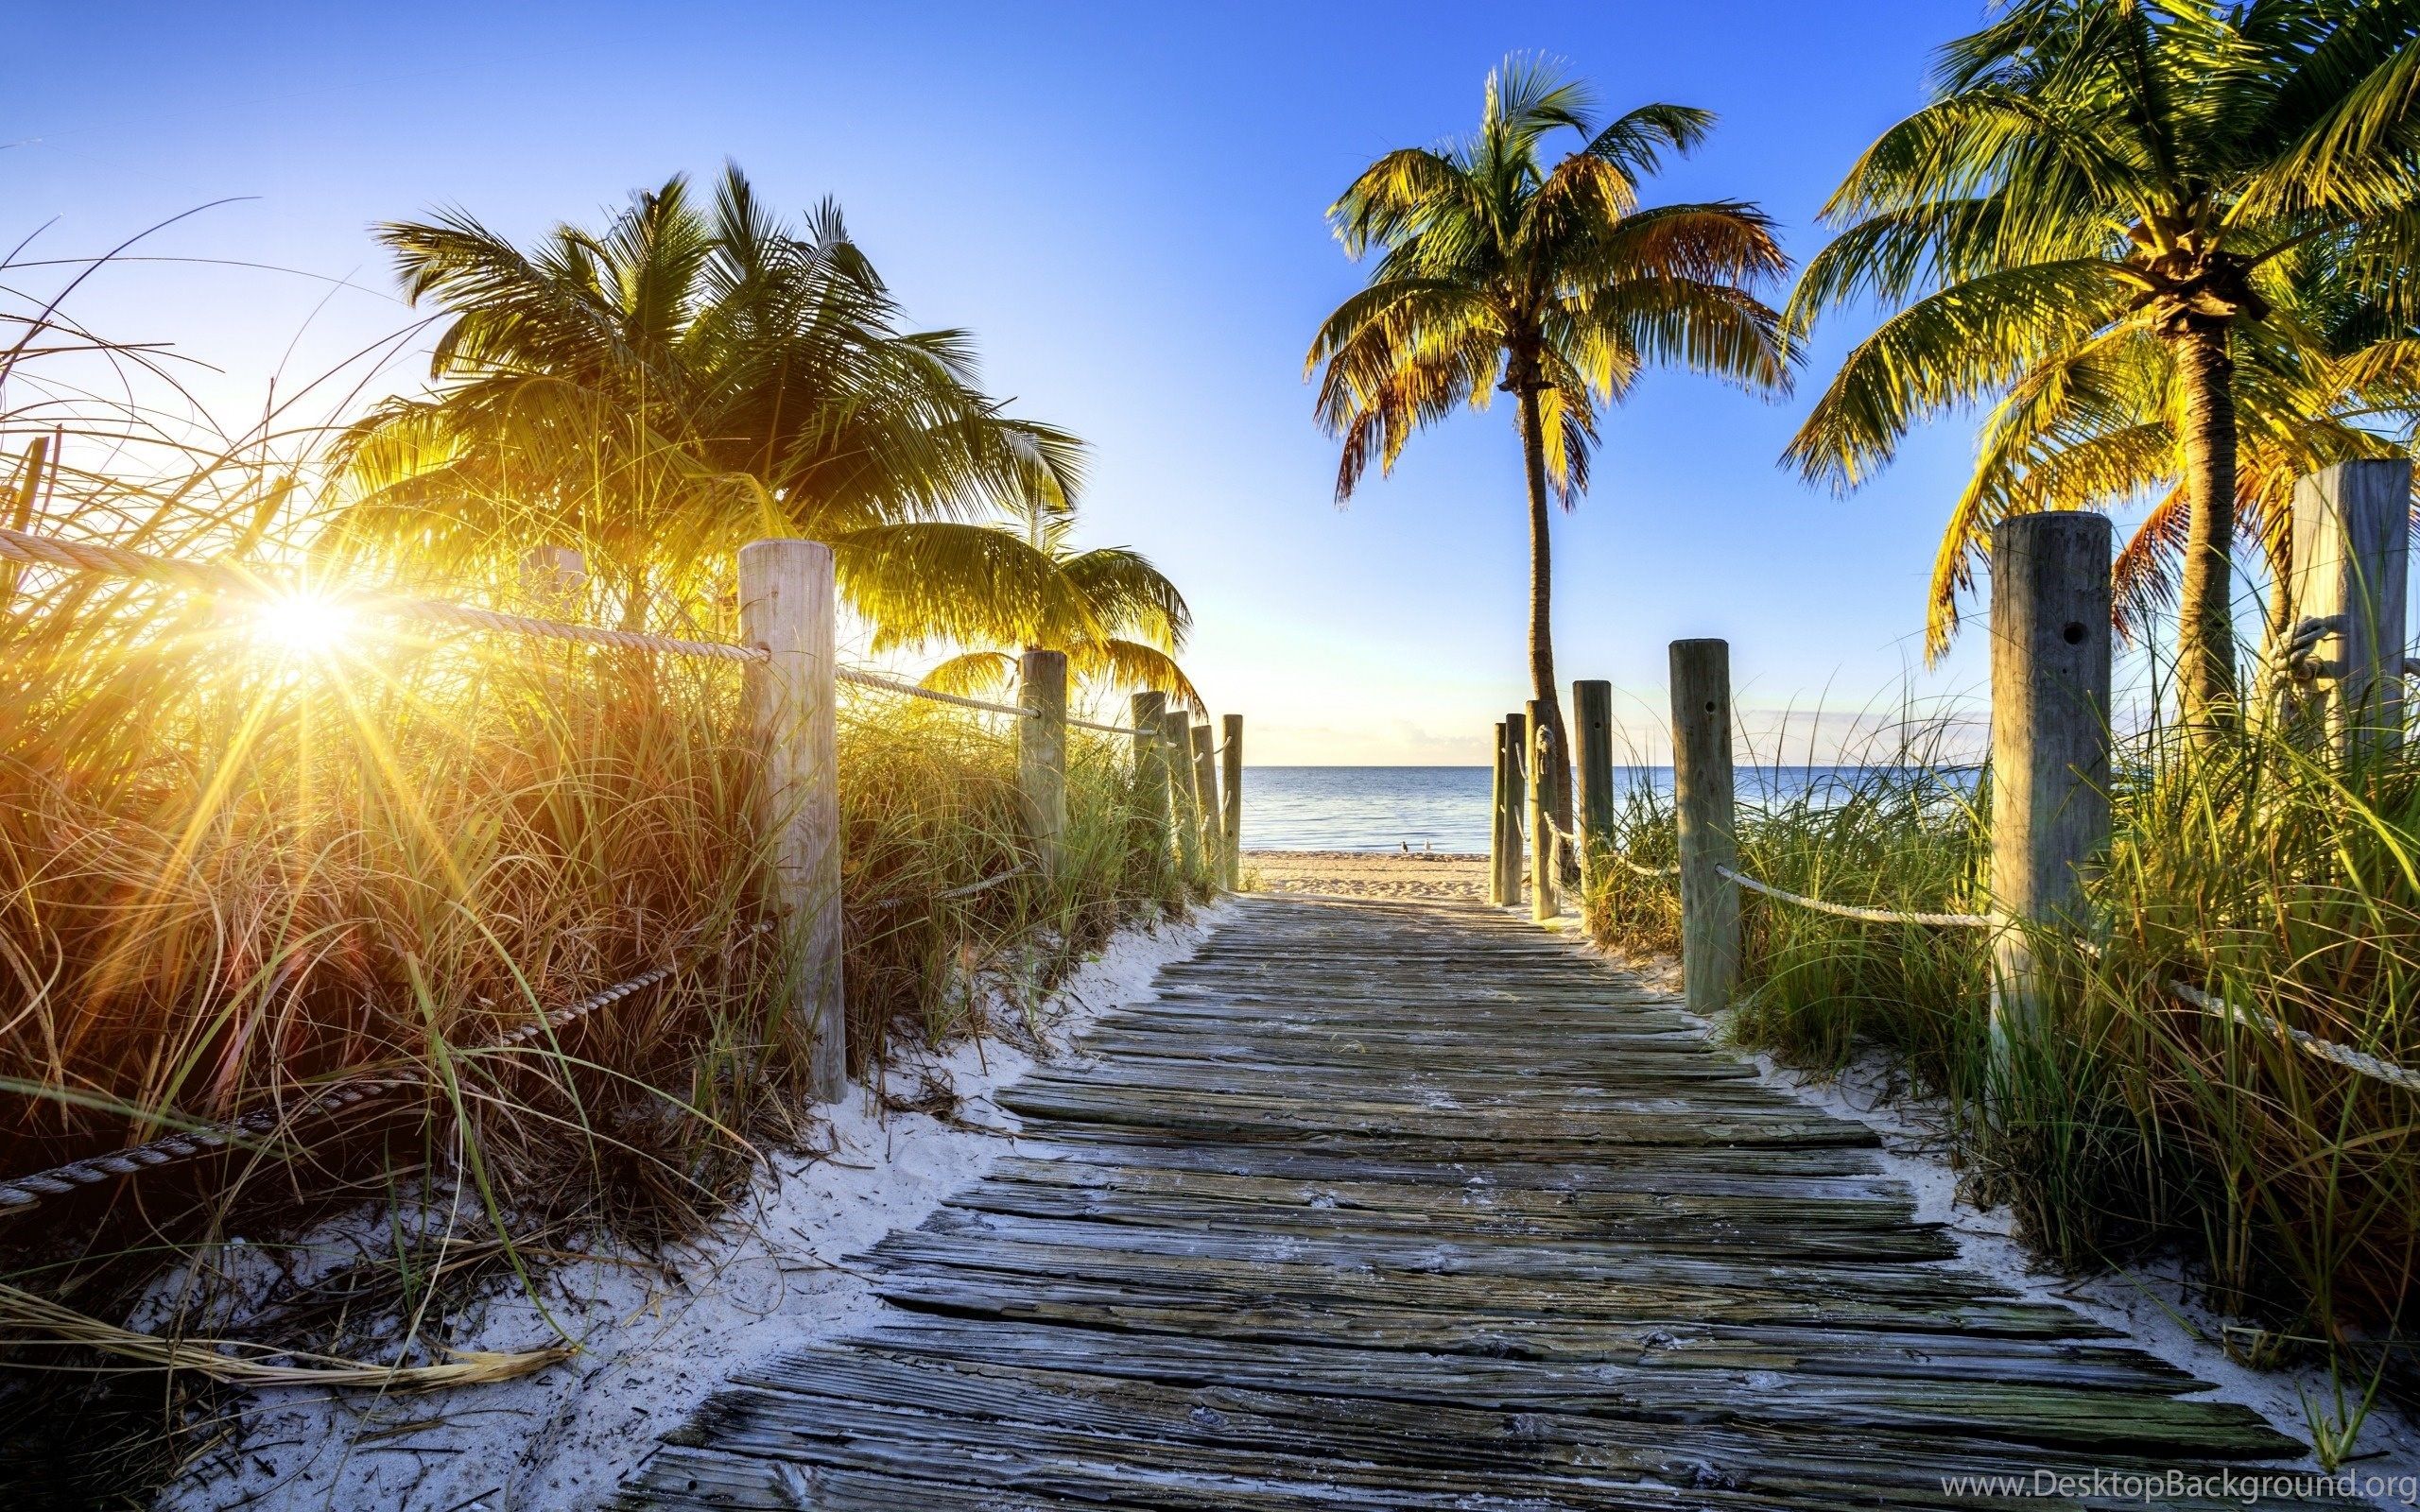 Hình Nền Florida Landscape: Khám phá địa điểm du lịch tuyệt đẹp của Florida chỉ với một cái nhìn vào hình nền này. Đứng trên bờ biển và ngắm nhìn bầu trời xanh thẳm, đó là trải nghiệm không thể nào quên. Hãy để hình nền Florida Landscape truyền tải cho bạn niềm đam mê vô cùng đối với thiên nhiên và du lịch.